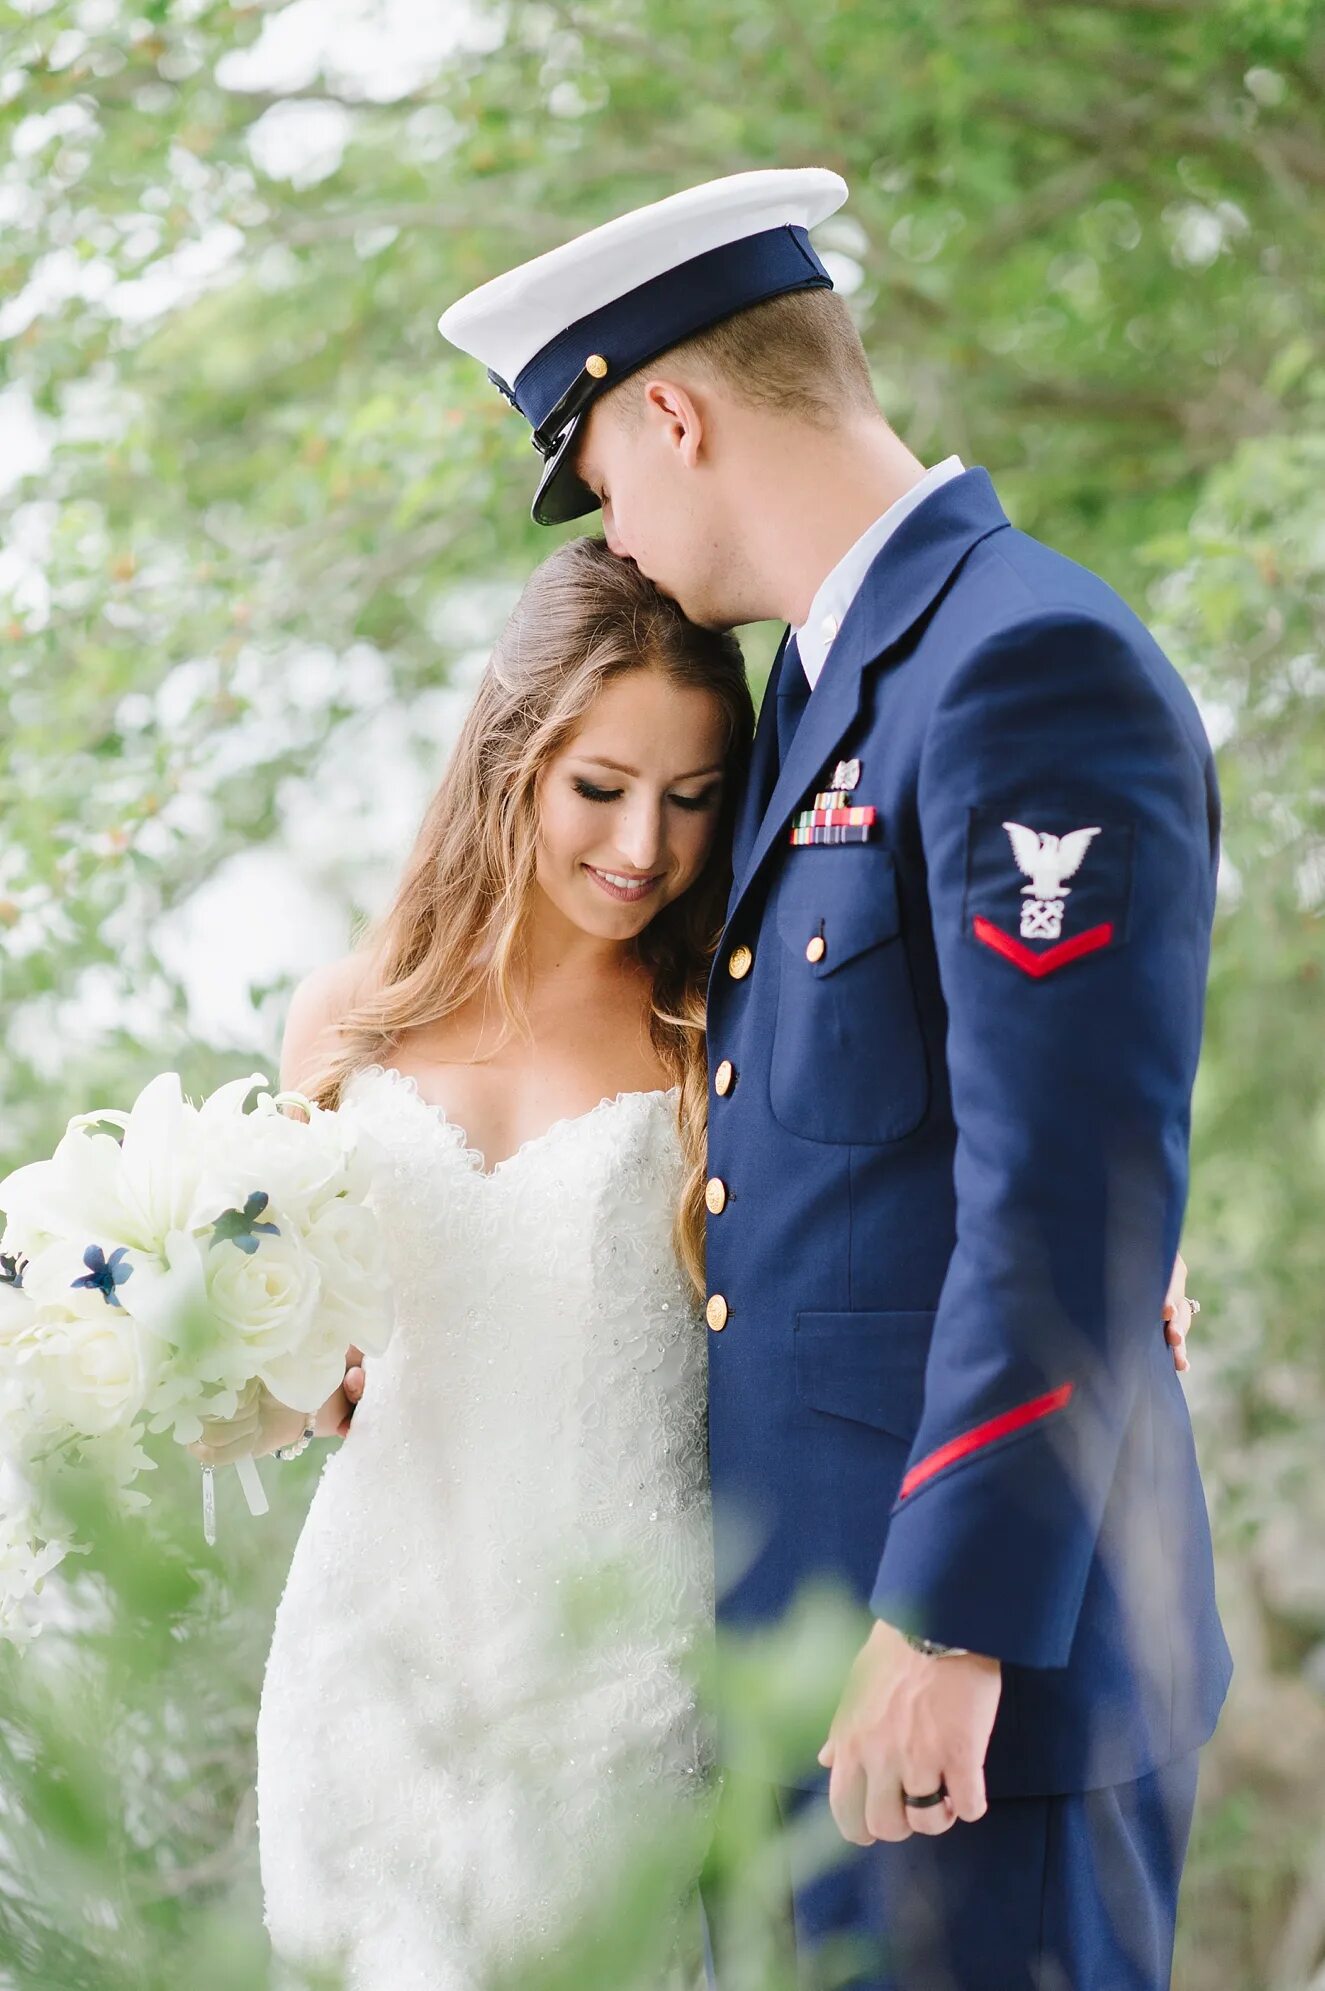 Жена военного 1. Свадьба в военном стиле. Свадебная фотосессия в военной форме. Жених в военной форме. Свадьба офицера.